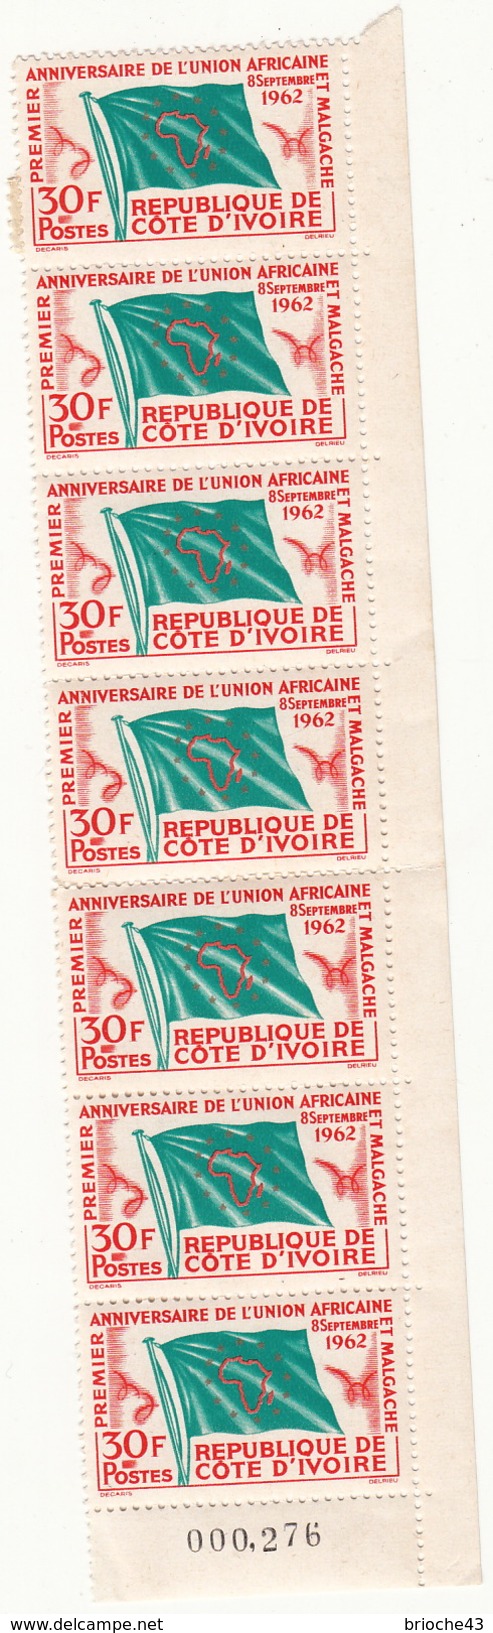 REPUBLIQUE DE COTE D'IVOIRE - BANDE 7 TIMBRES 30F ANNIVERSAIRE DE L'UNION AFRICAINE 8 SEPTEMBRE 1962 - 6090 - Sammlungen (ohne Album)